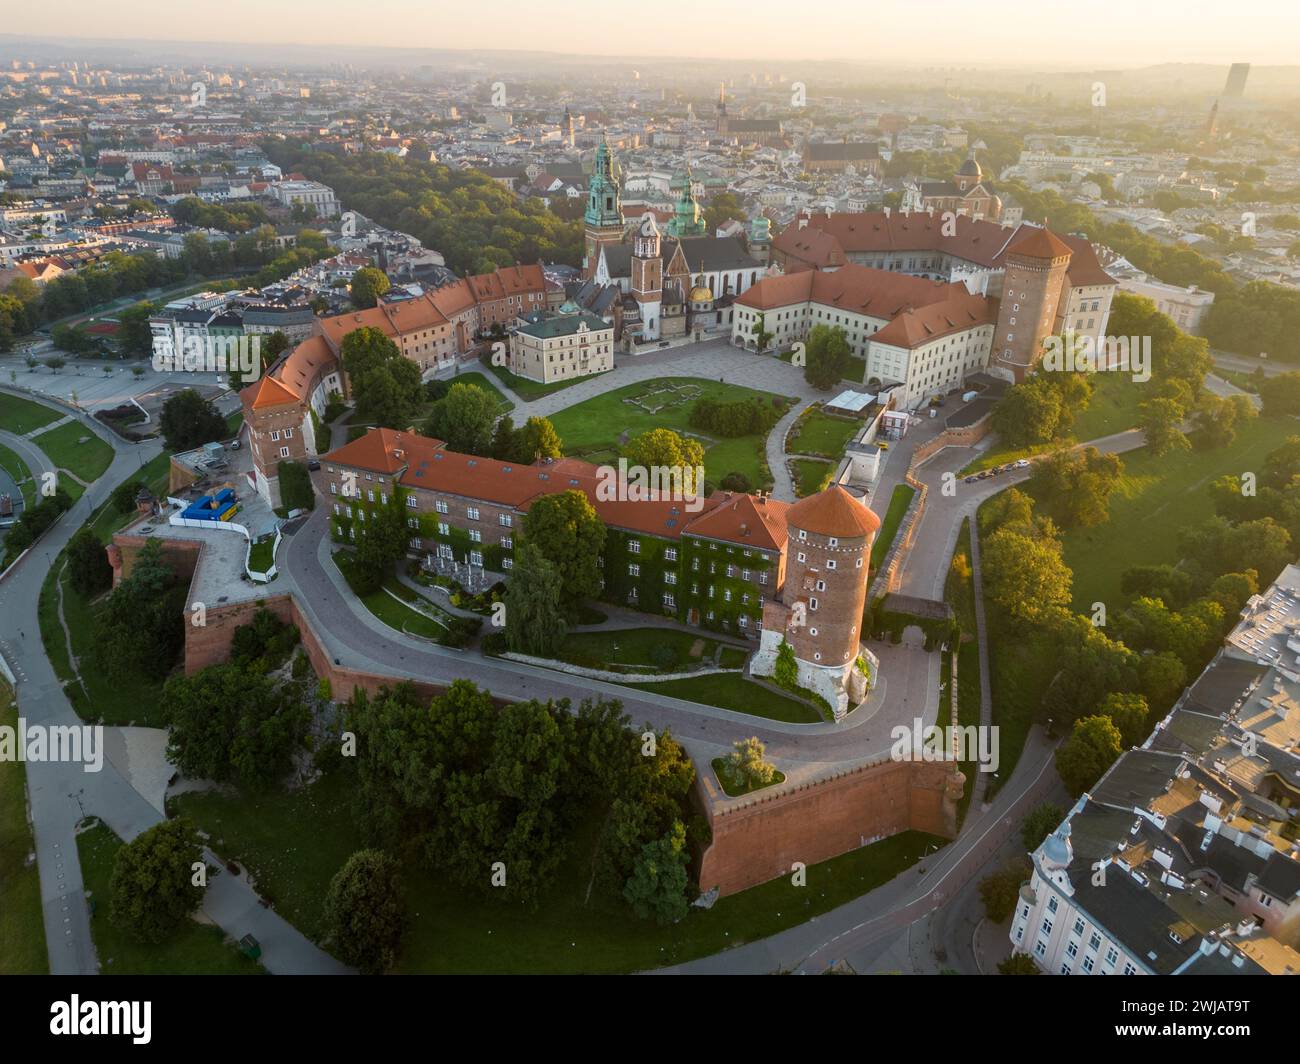 Wunderschönes Luftbild des Wawel-Schlosses und der Altstadt von Krakau in Polen. Gedreht an einem atemberaubenden Sommermorgen Stockfoto